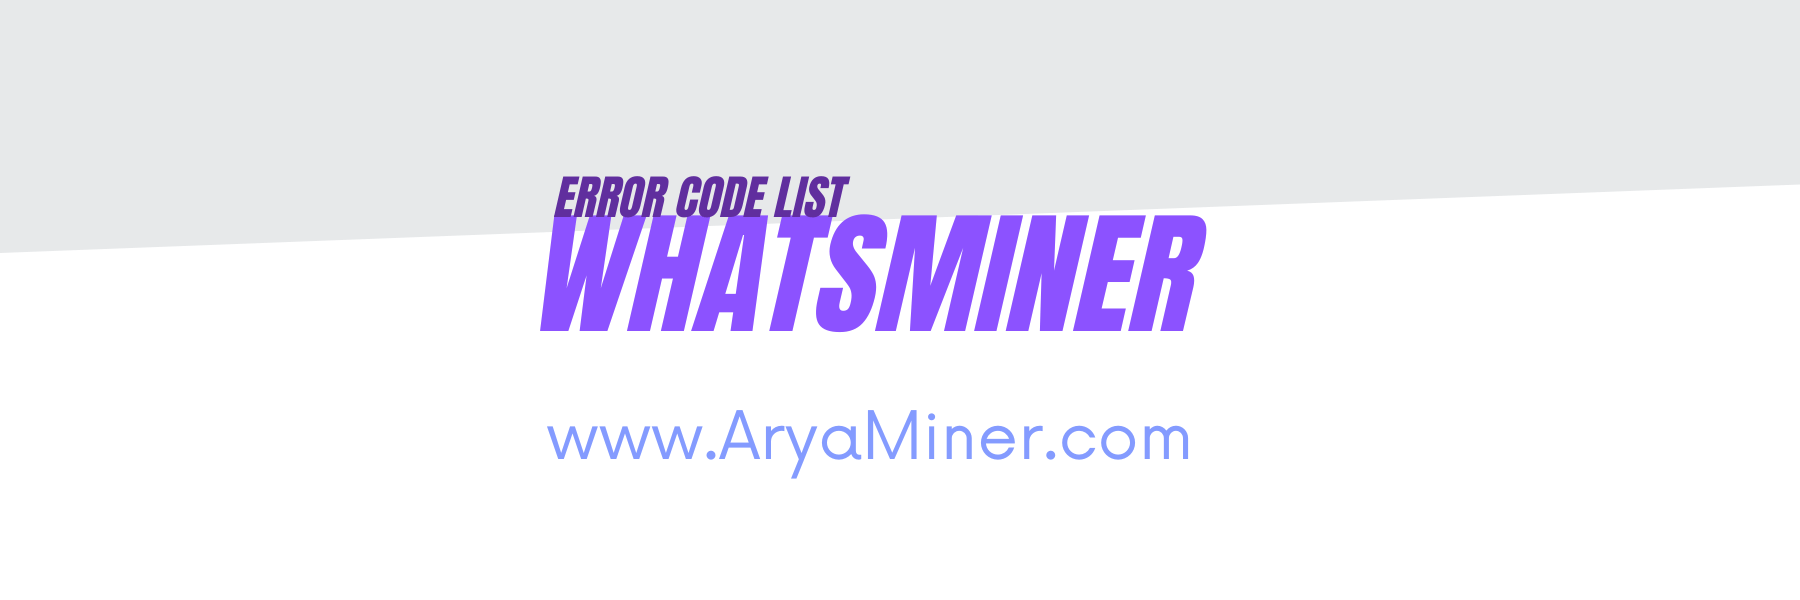 whatsminer error code - Aryaminer